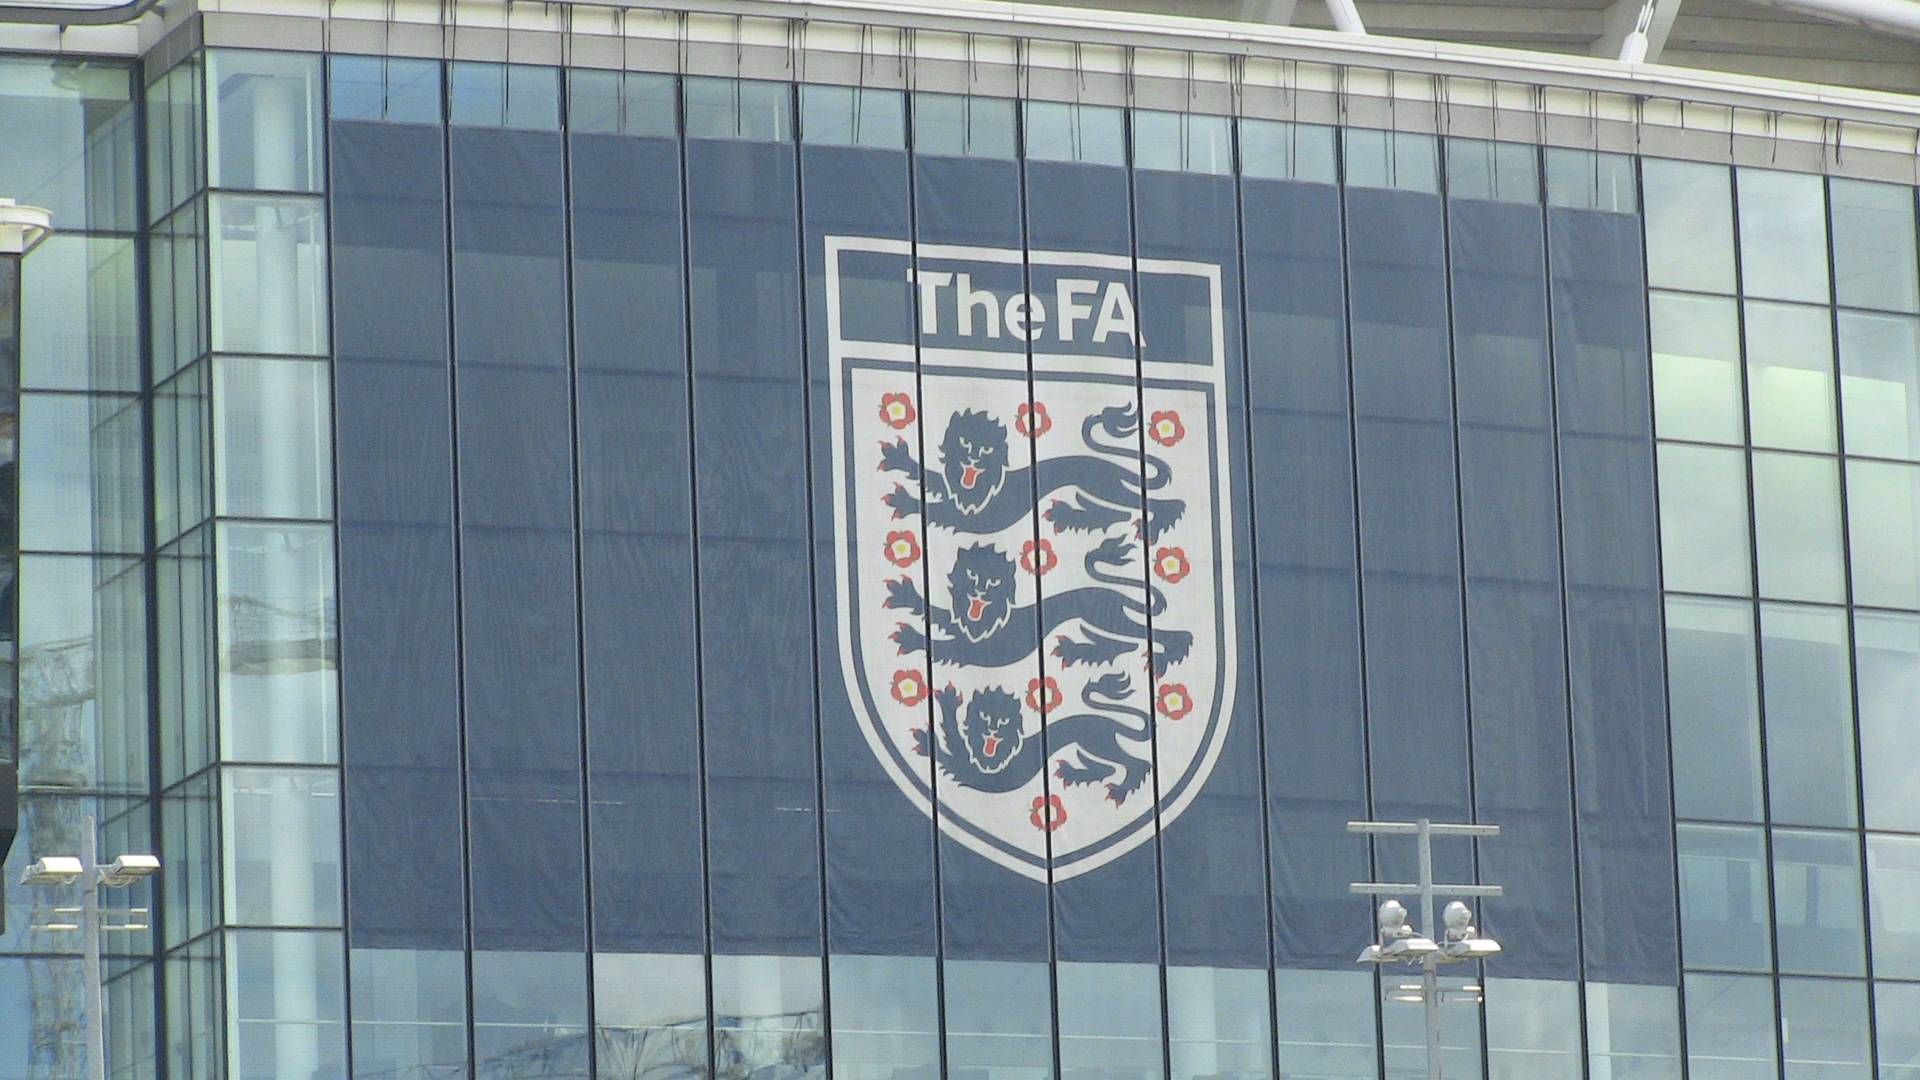 Логотип Фтубольной ассоциации Англии на стадионе «Уэмбли»